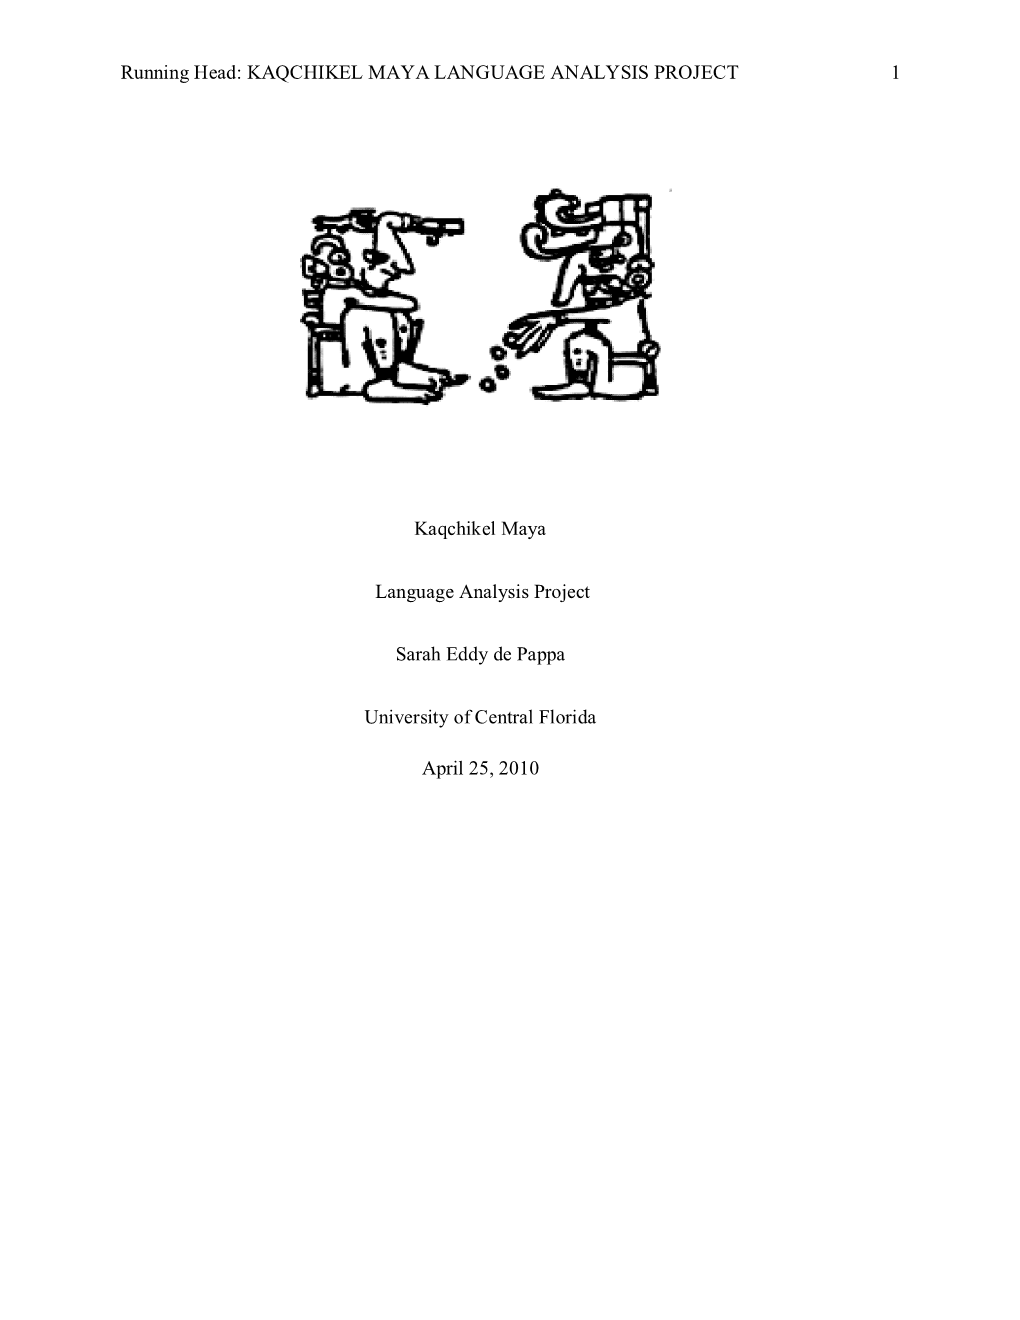 Kaqchikel Maya Language Analysis Project